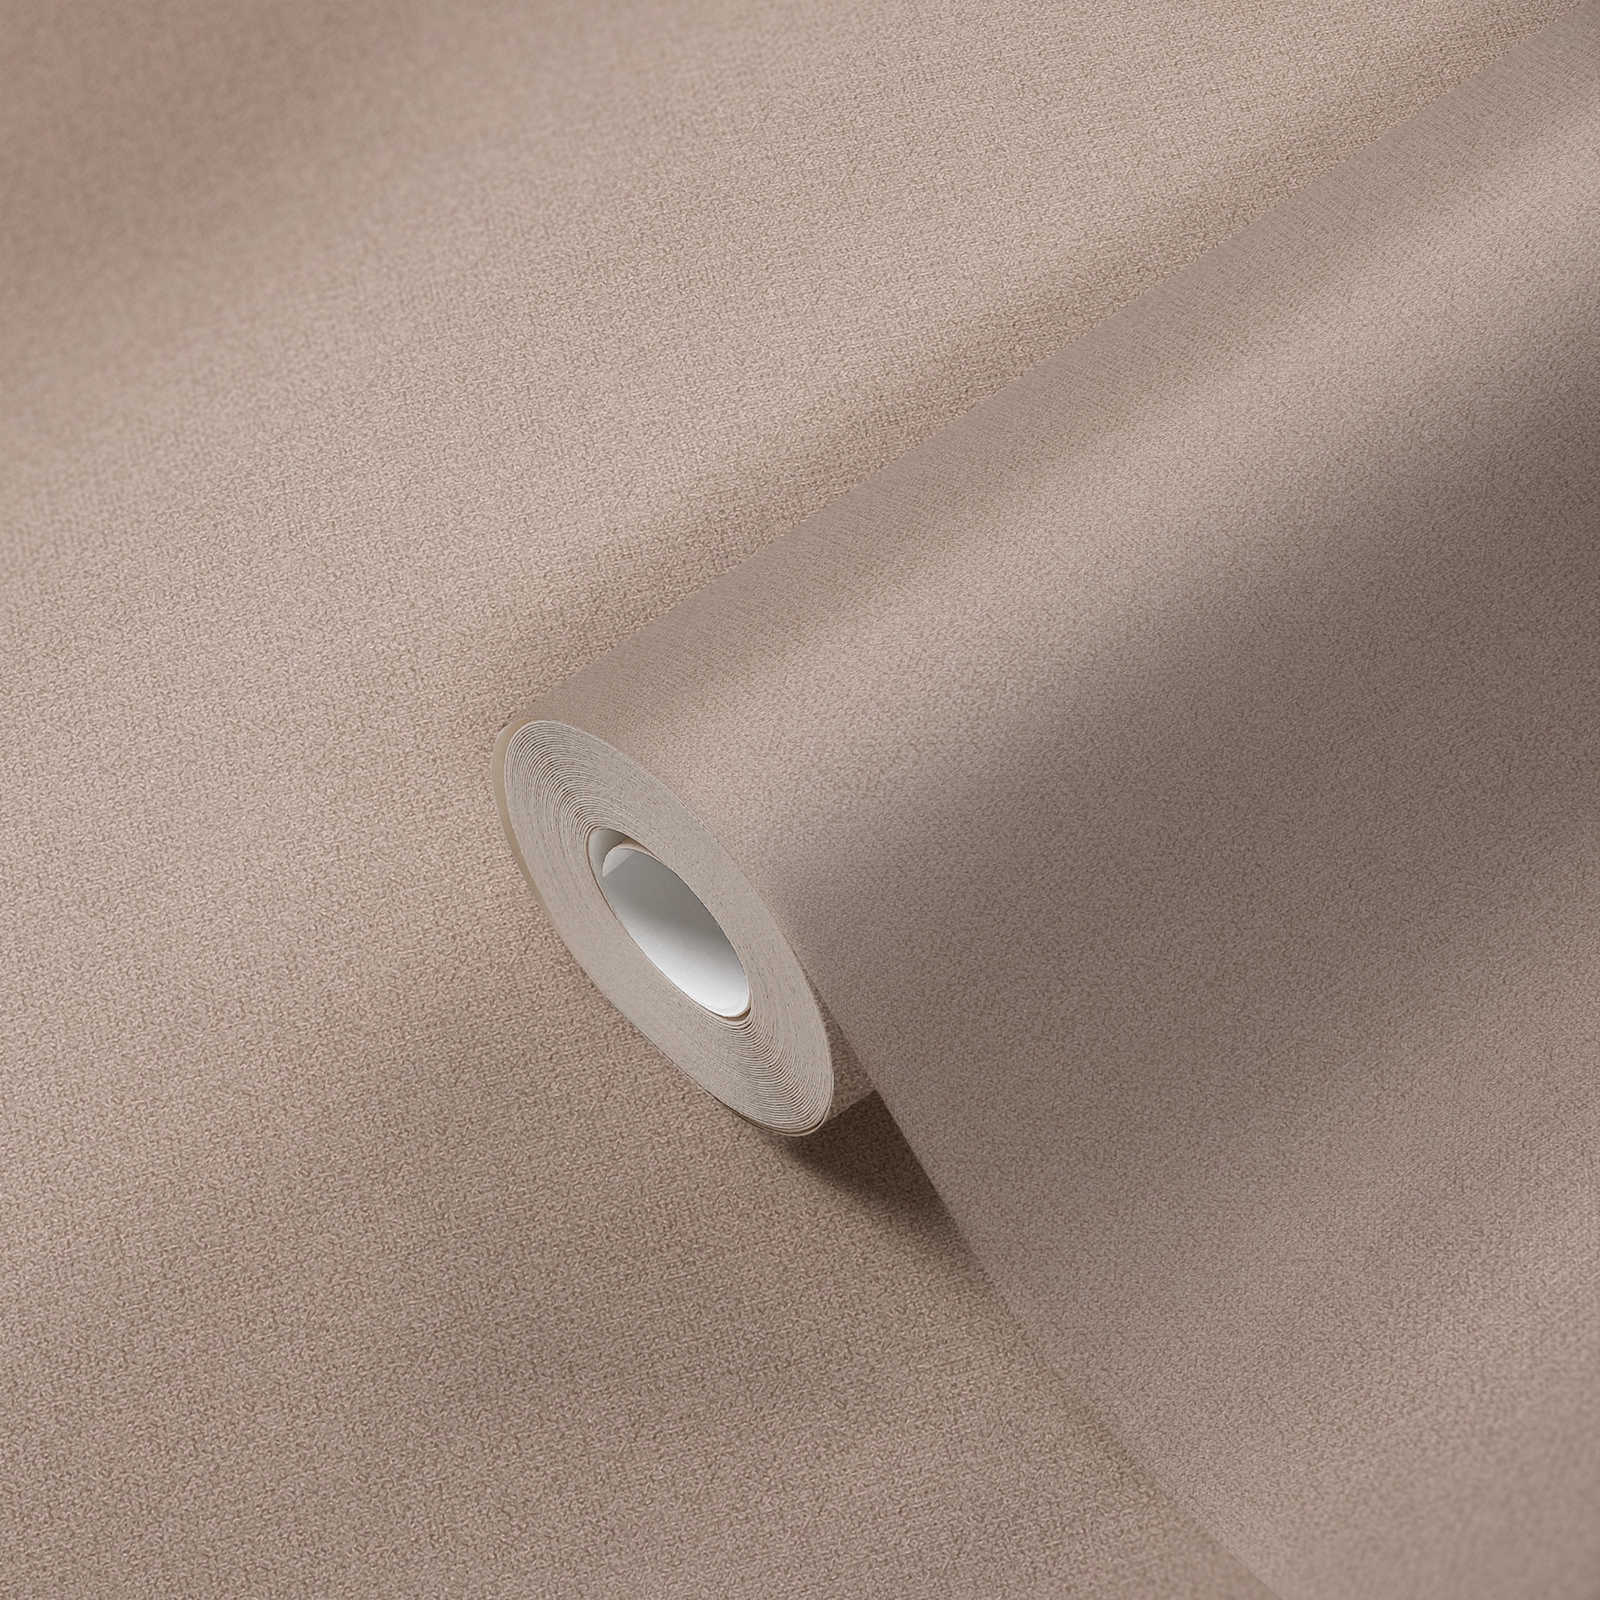             Eenheidsbehang met linnenlook PVC-vrij - bruin, beige
        